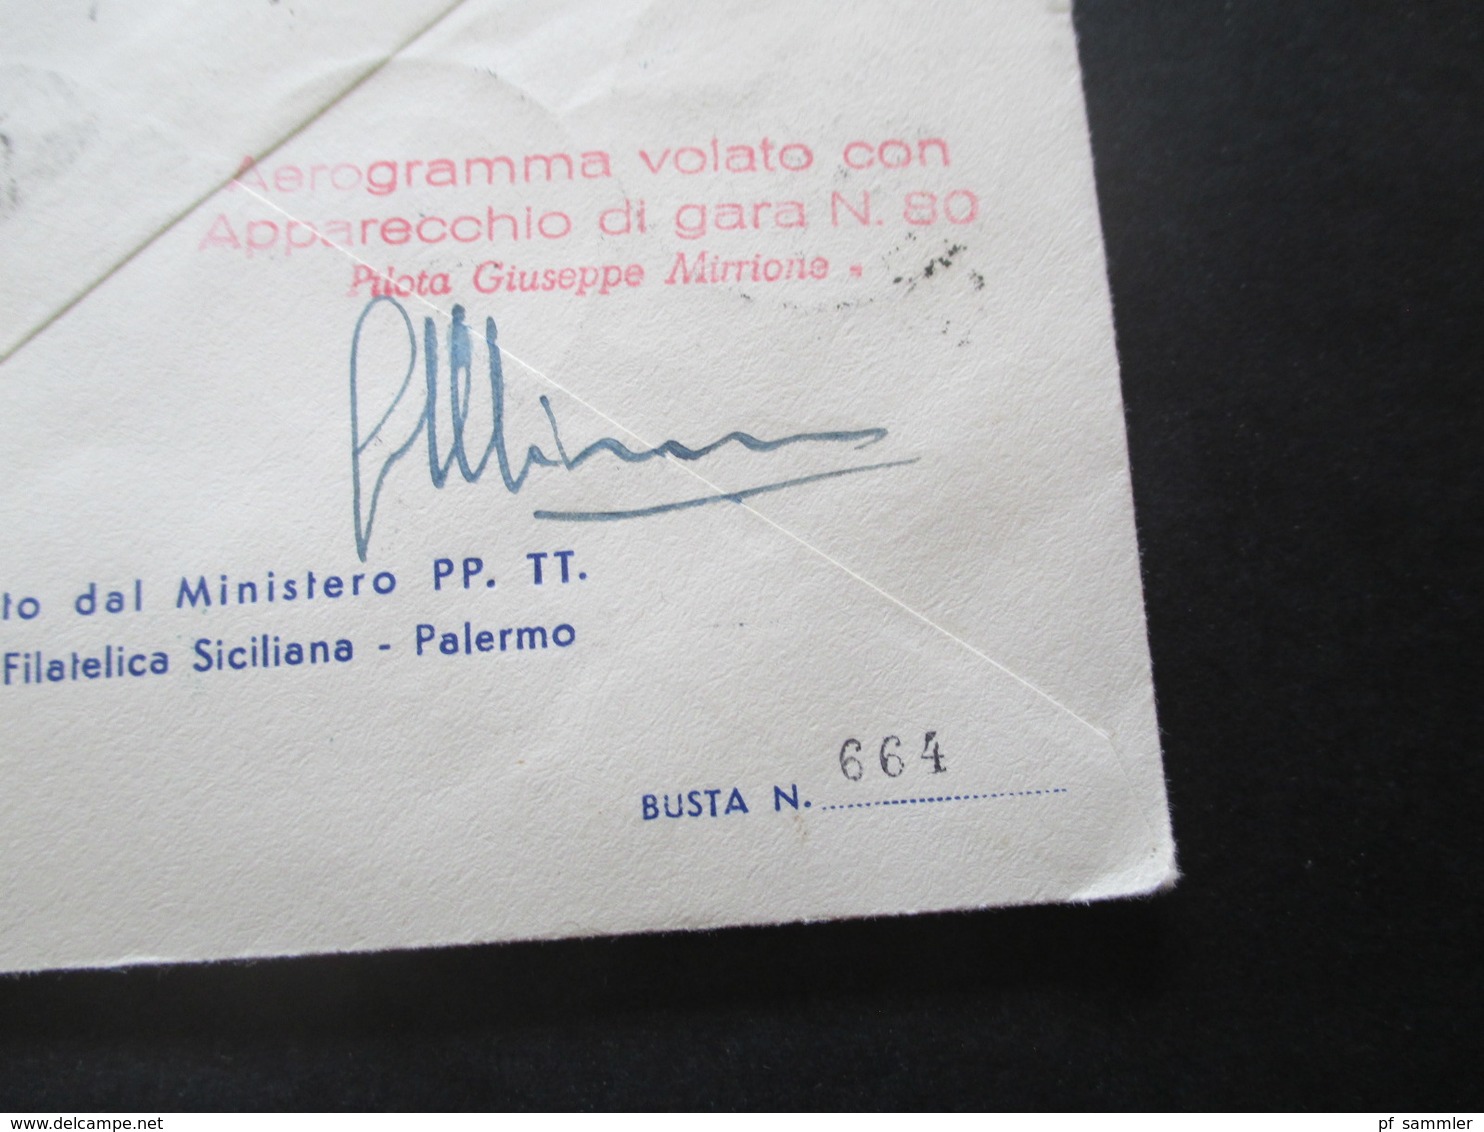 Italien / Belgisch Congo 1954 Luftpost / Aeroclub Palermo / Giro Aereo Intern Di Sicilia mit original Unterschrift Pilot